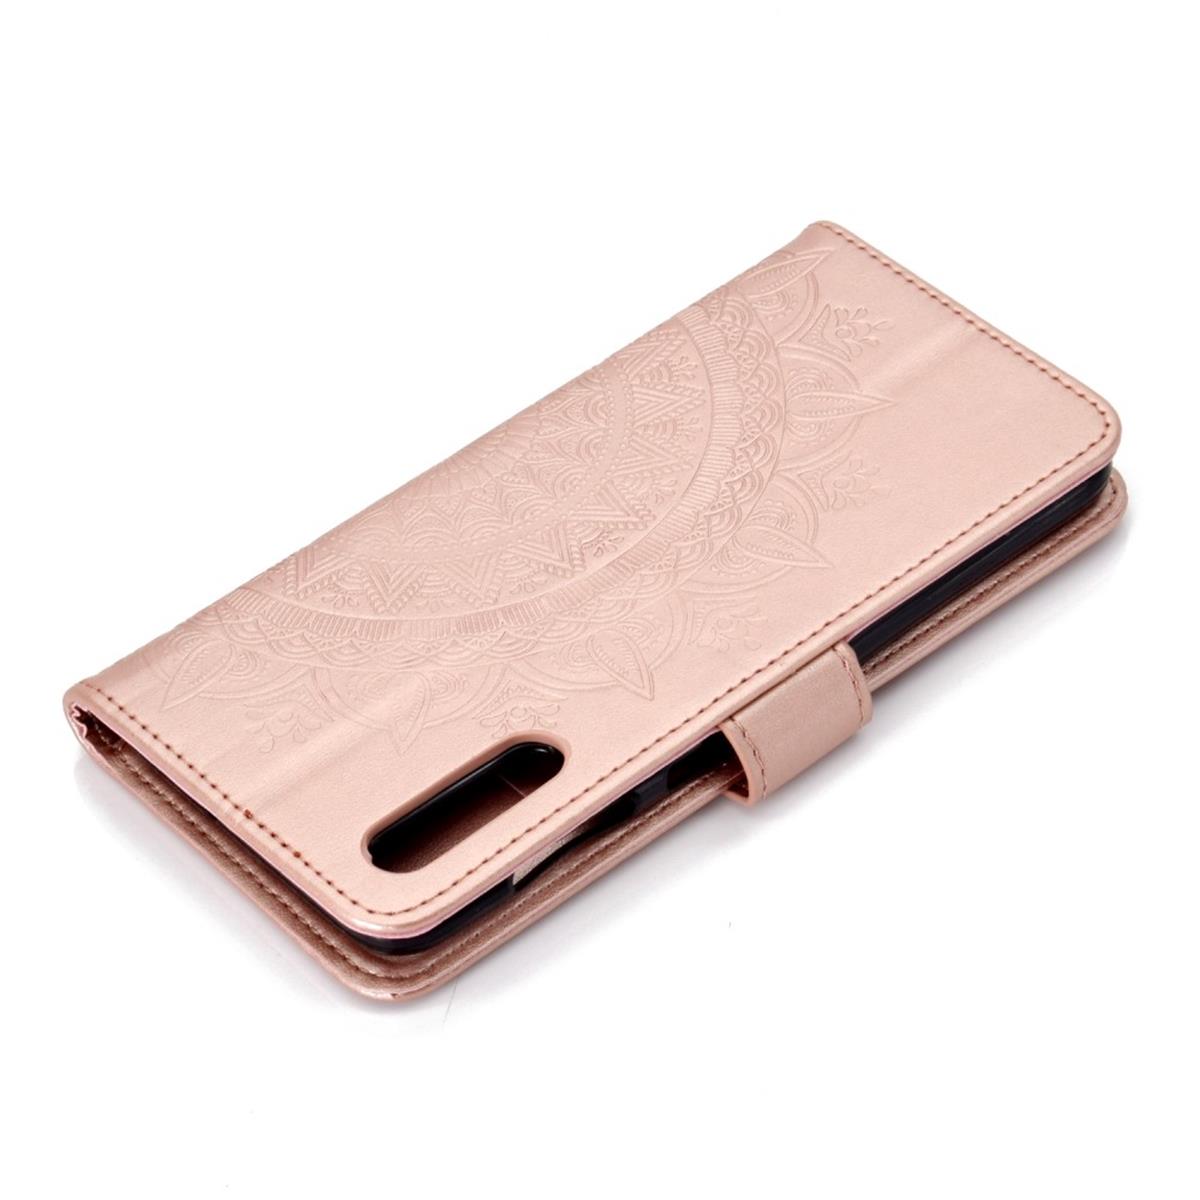 Hülle für Samsung Galaxy A70 Handyhülle Schutz Tasche Case Etui Cover Mandala Rosegold